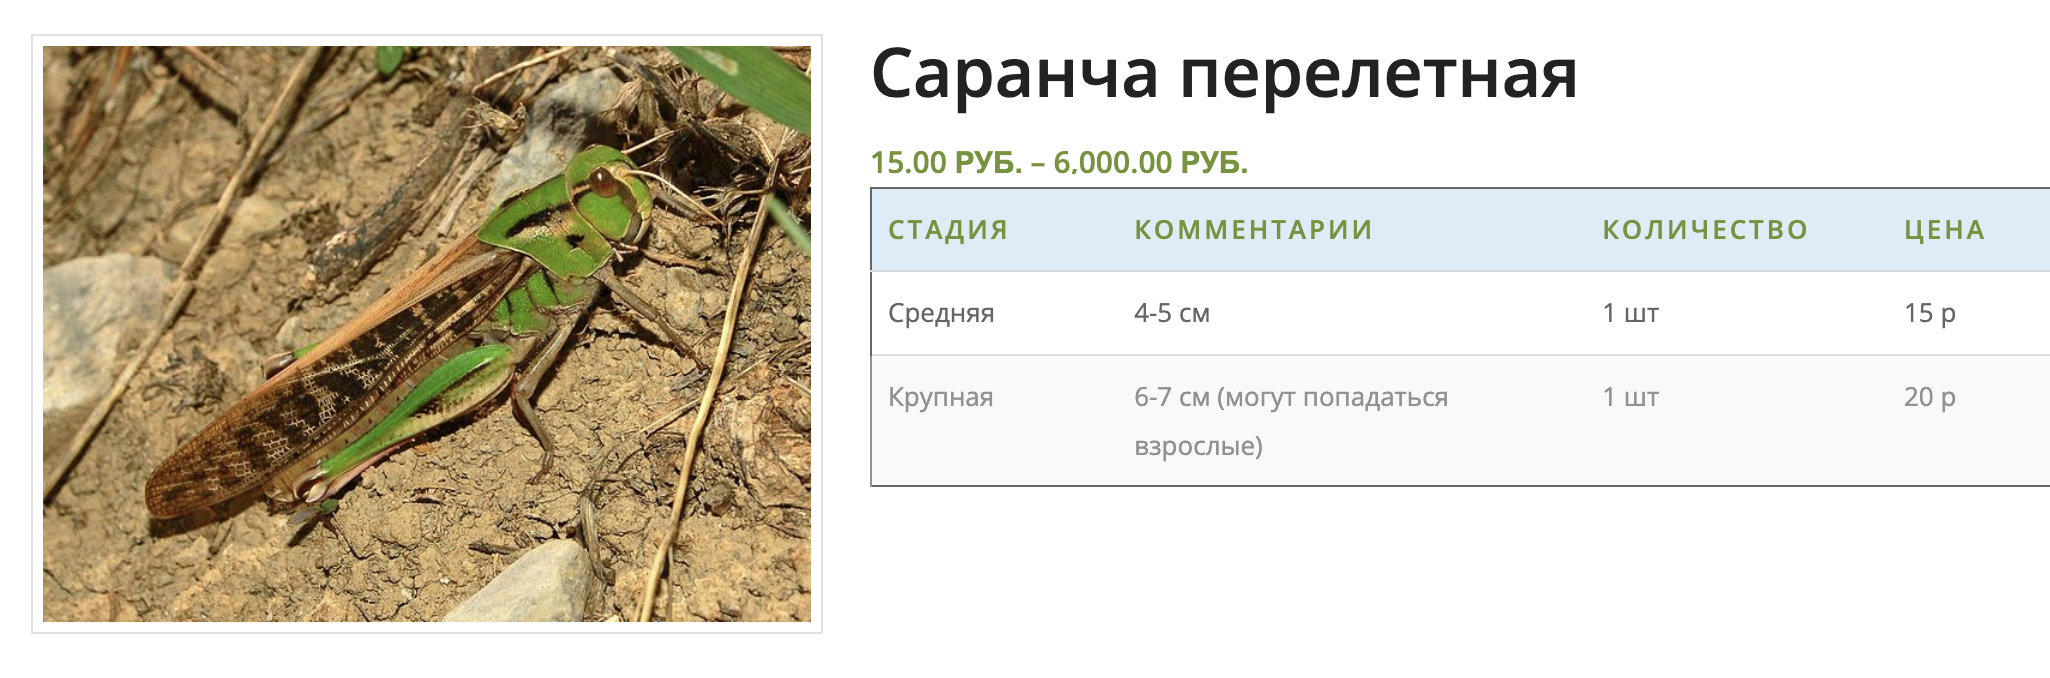 Саранча считается деликатесом и стоит в разы дороже сверчков. Источник: sverchokcorm.ru